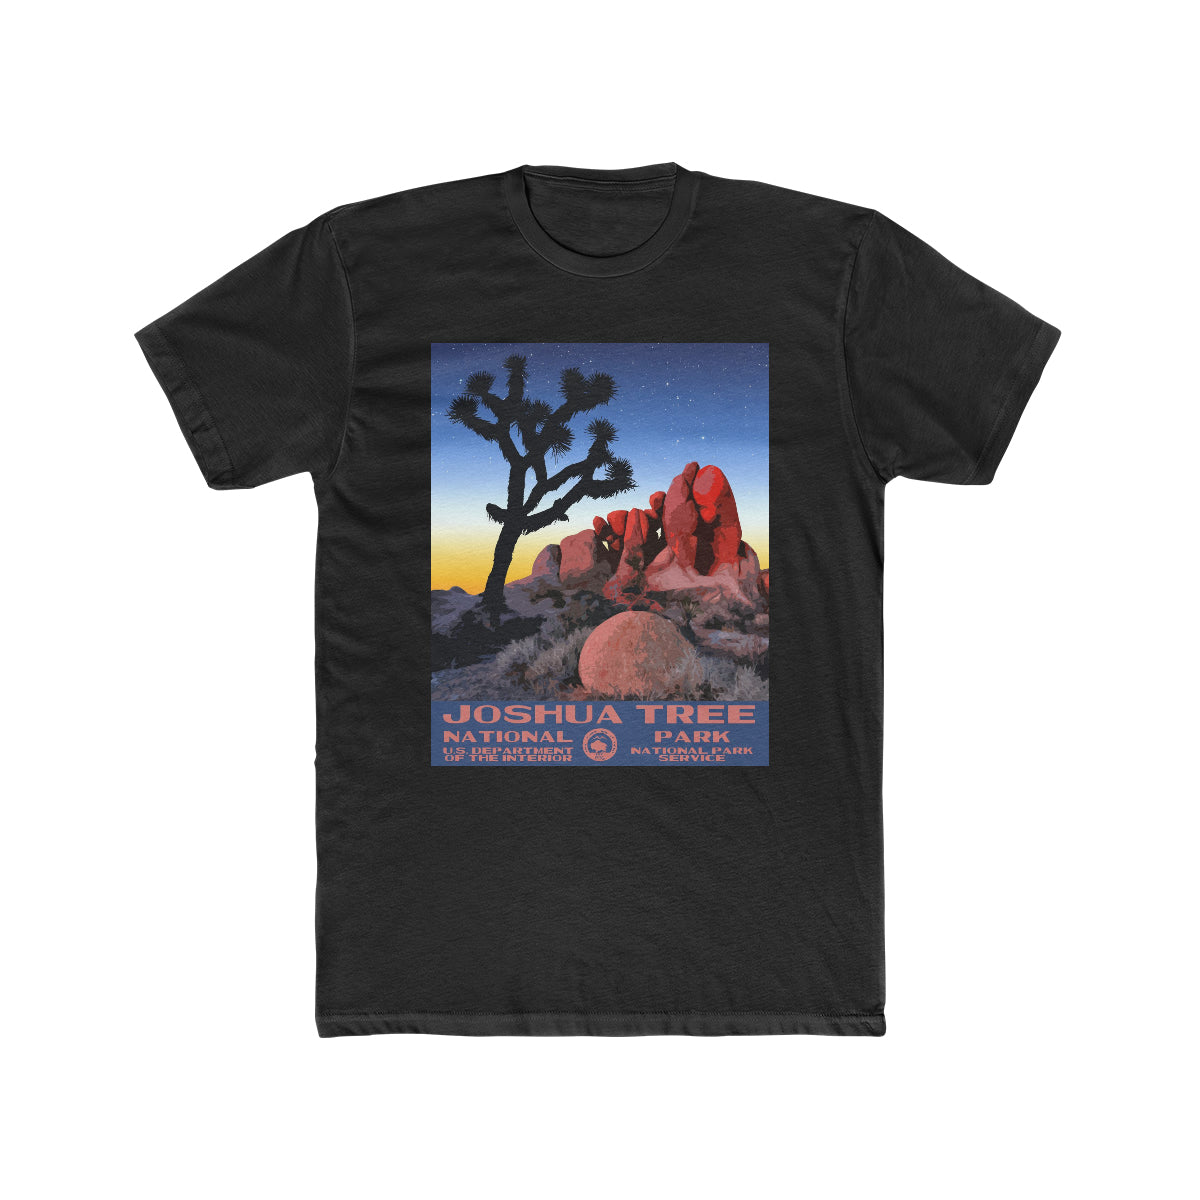 Joshua Tree National Park T-Shirt - Skull Rock